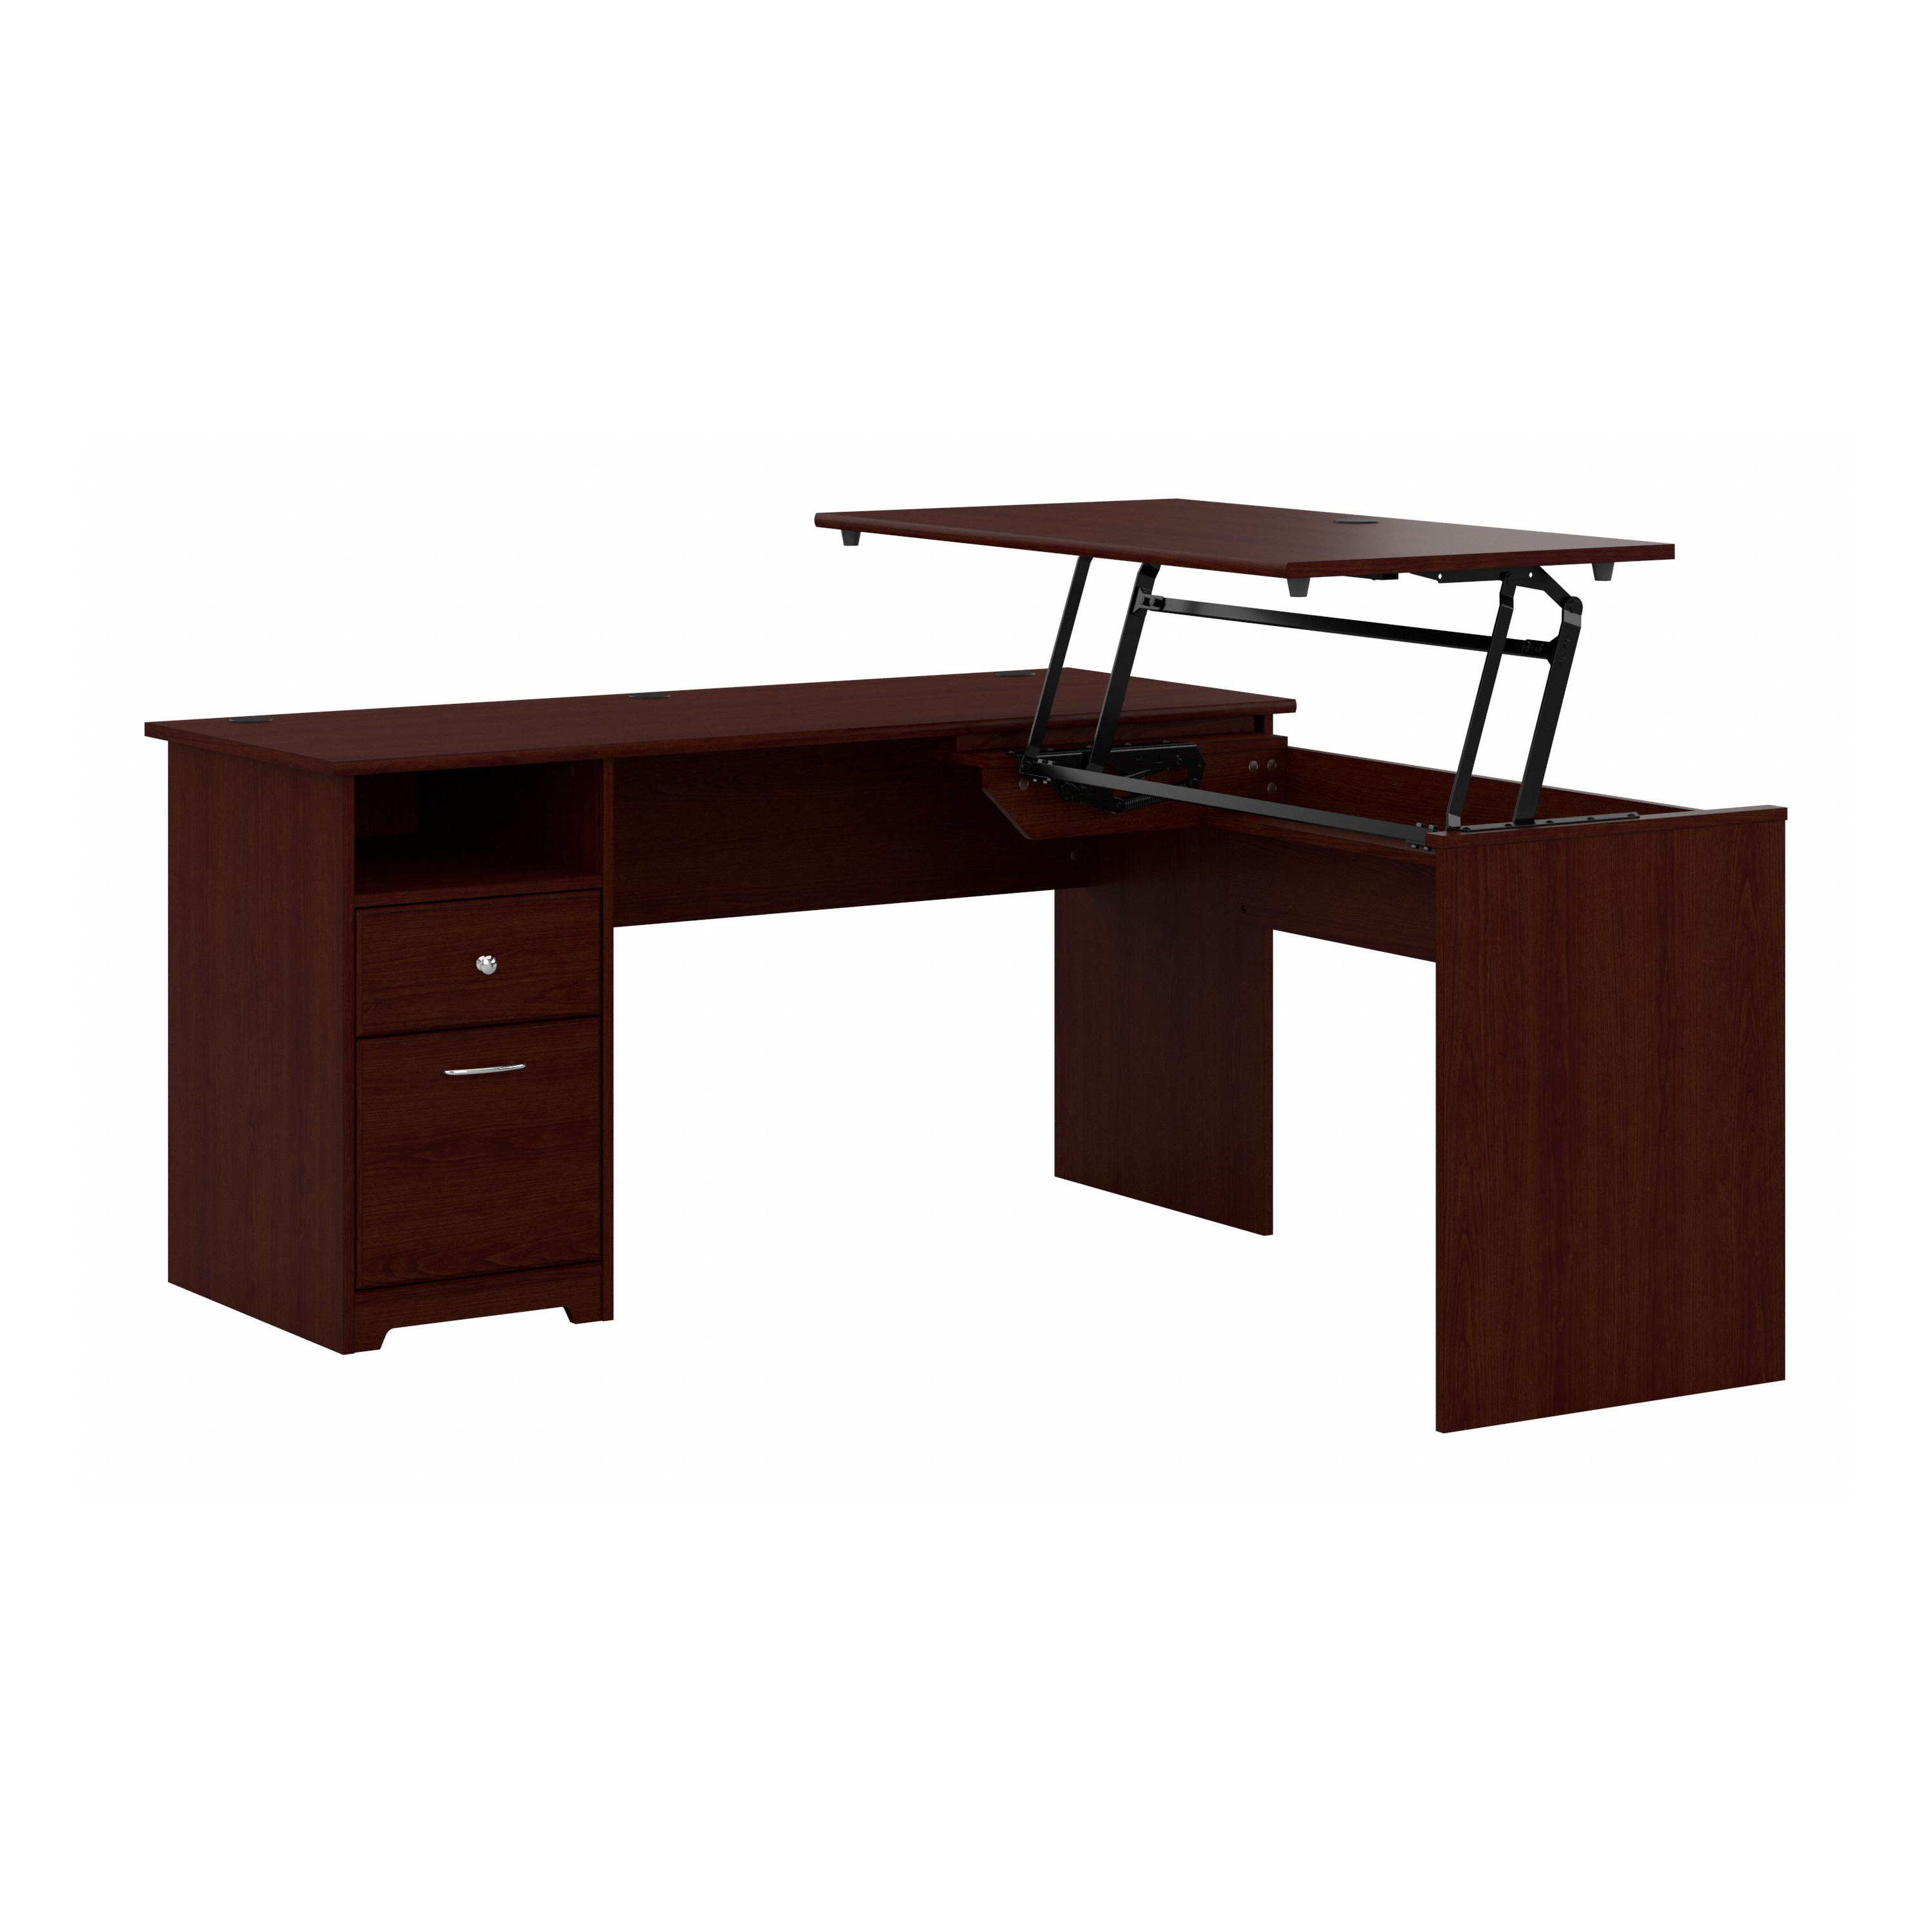 Shop Bush Furniture Cabot 60W 3 Position Sit to Stand L Shaped Desk 02 CAB043HVC #color_harvest cherry